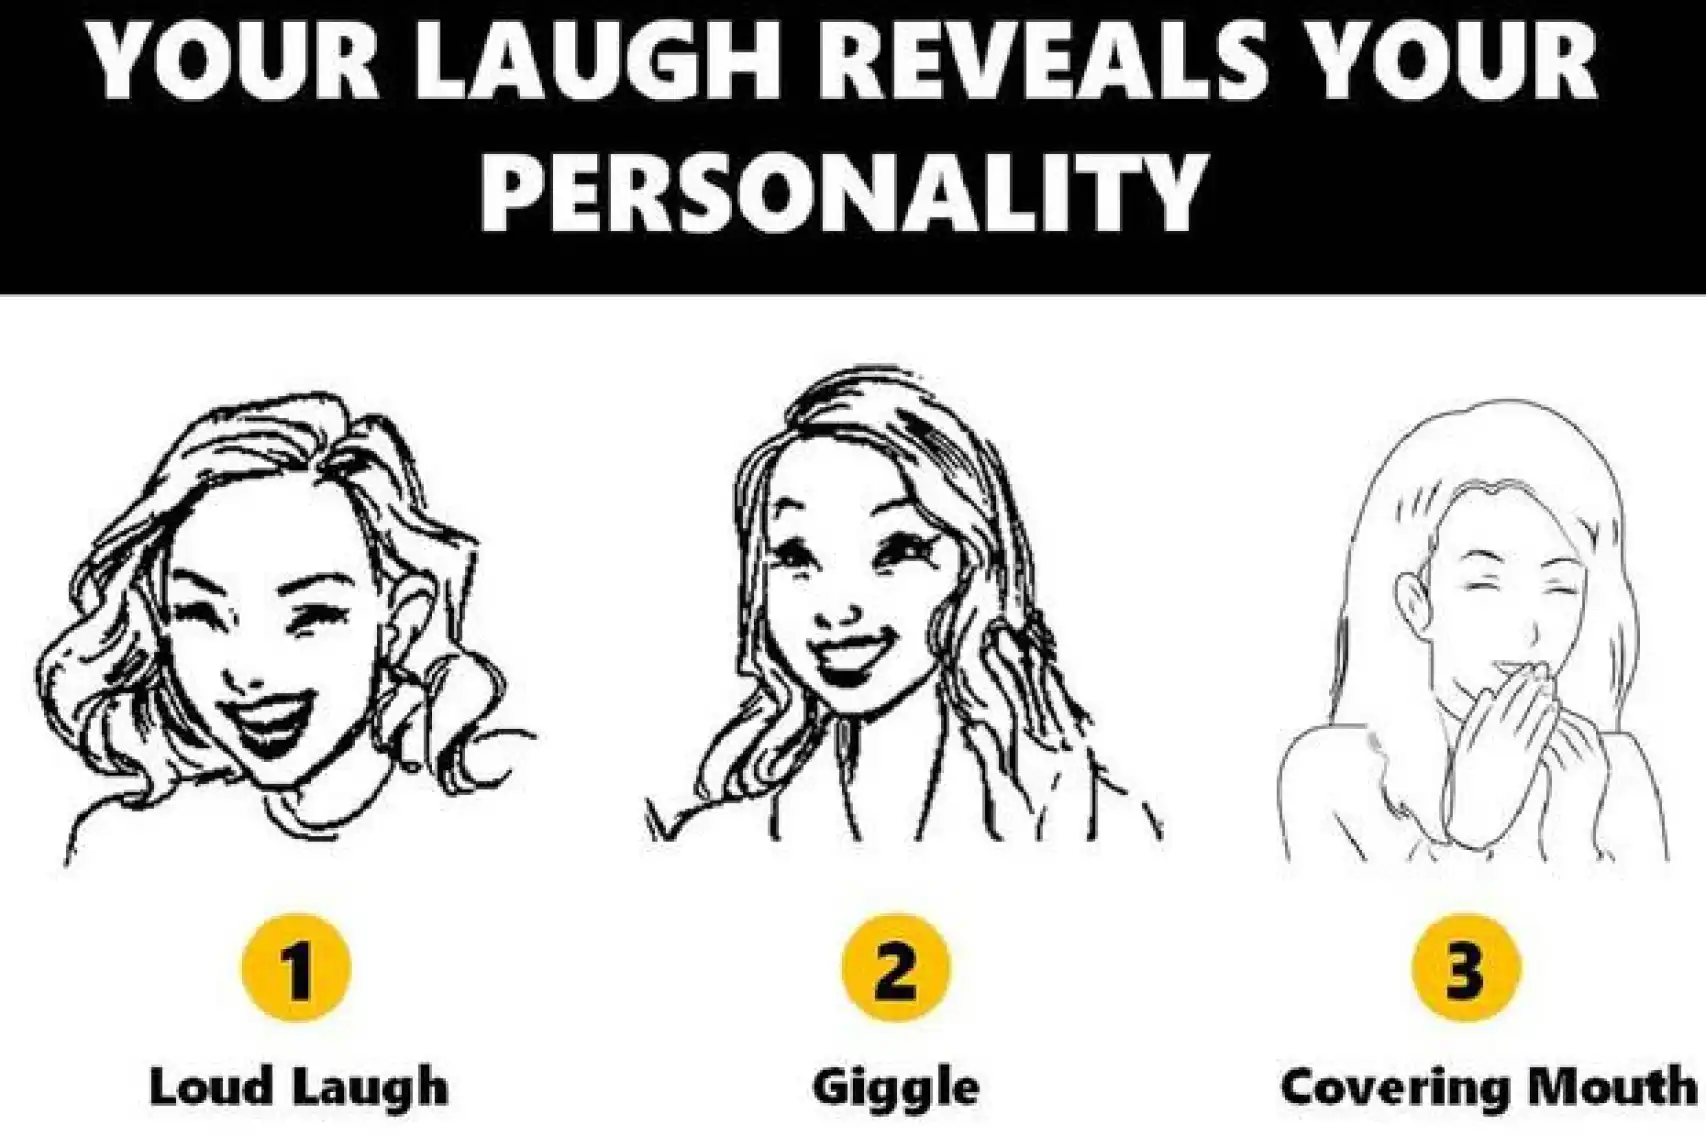 نقدم لك اليوم إمكانية معرفة المزيد عن نفسك من خلال ضحكك.